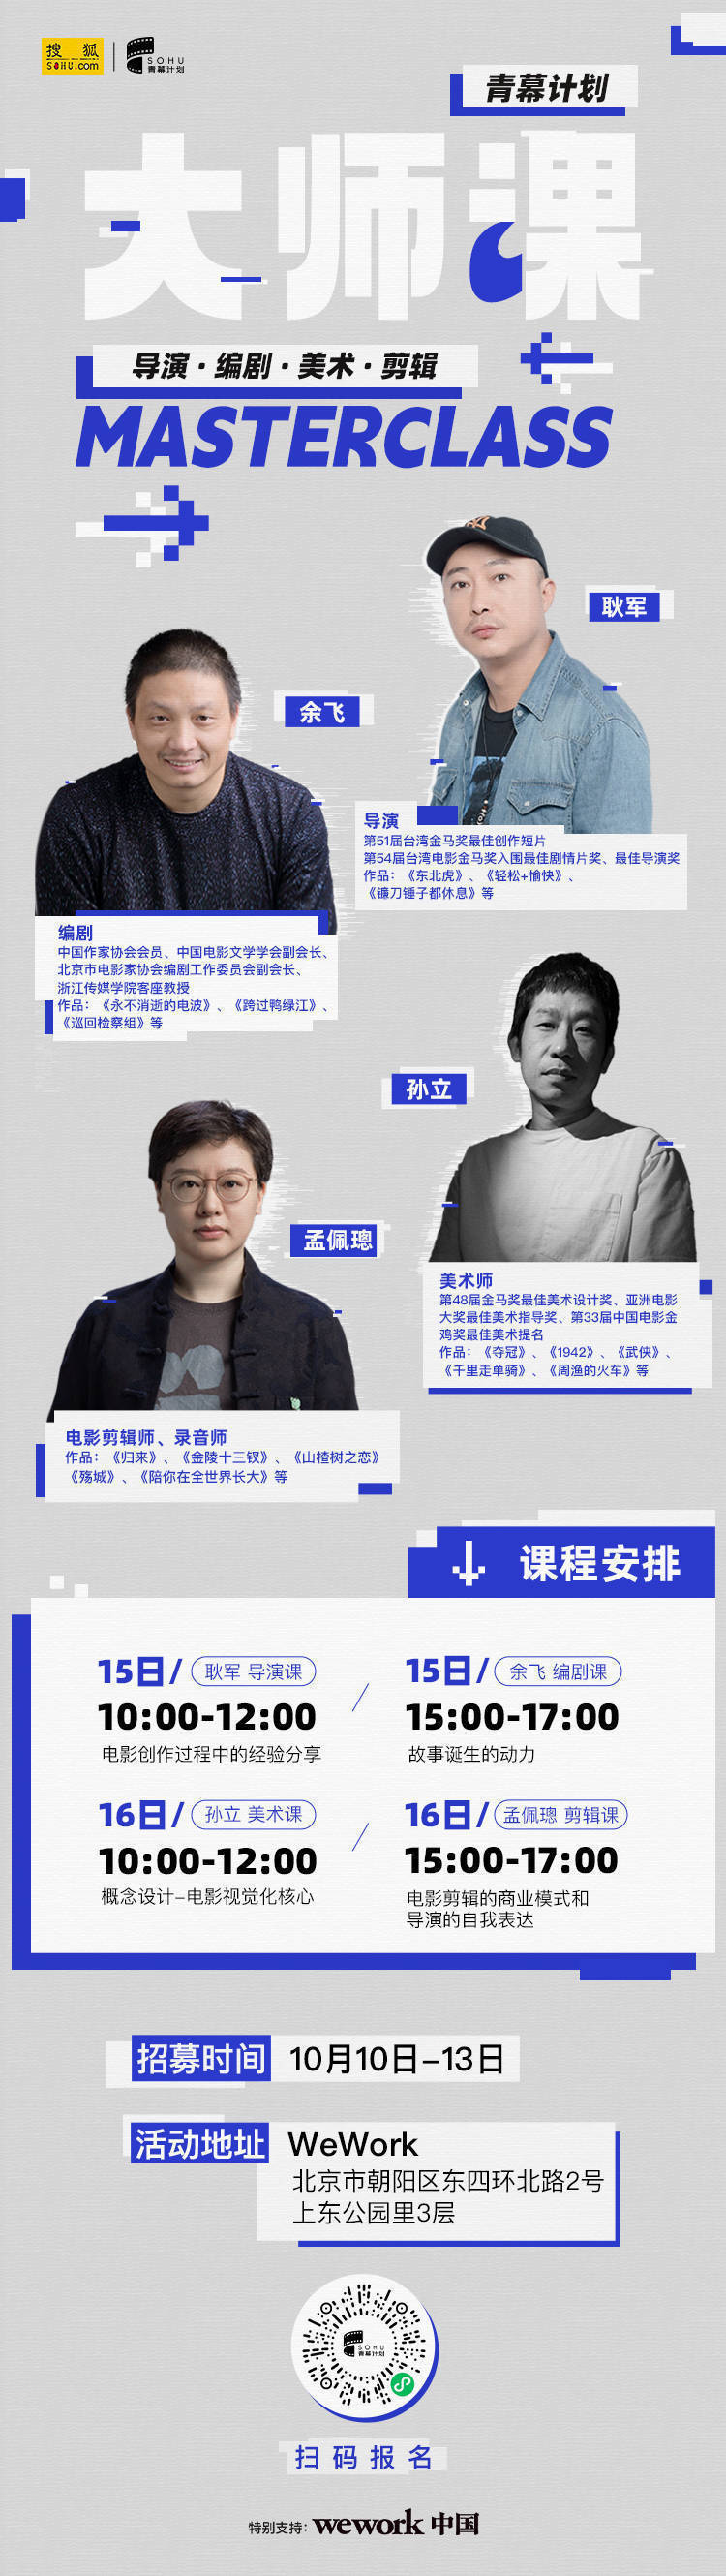 第二届搜狐青幕计划大师课 扫码参与免费课程